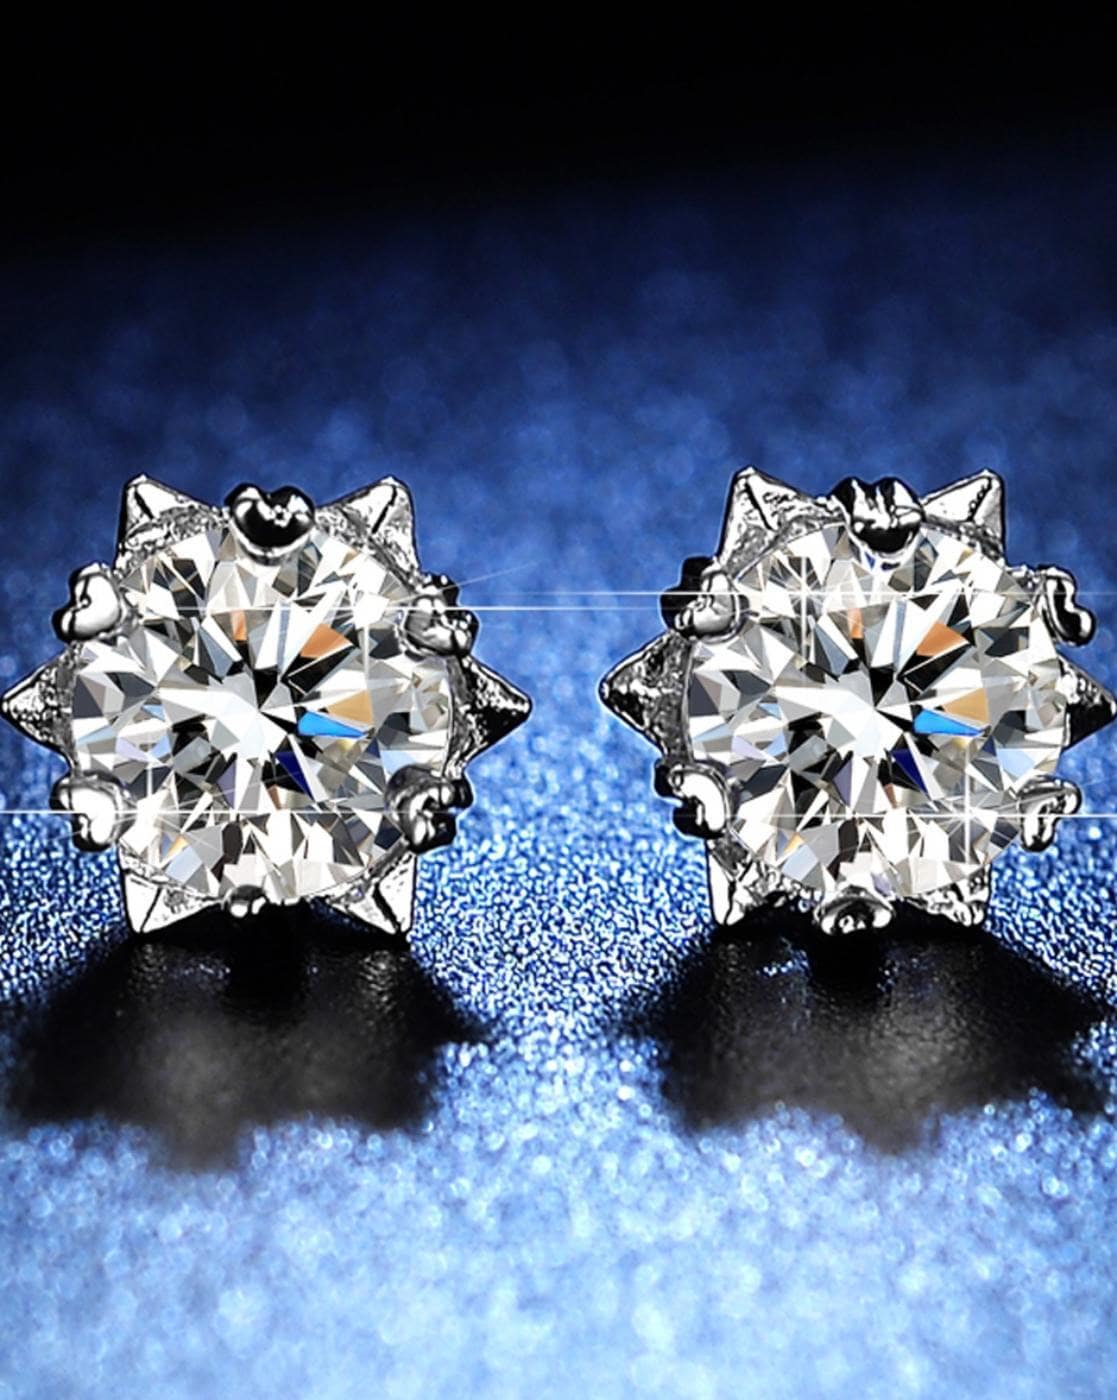 Buy Silver-Toned Earrings for Women by Jewels galaxy Online | Ajio.com